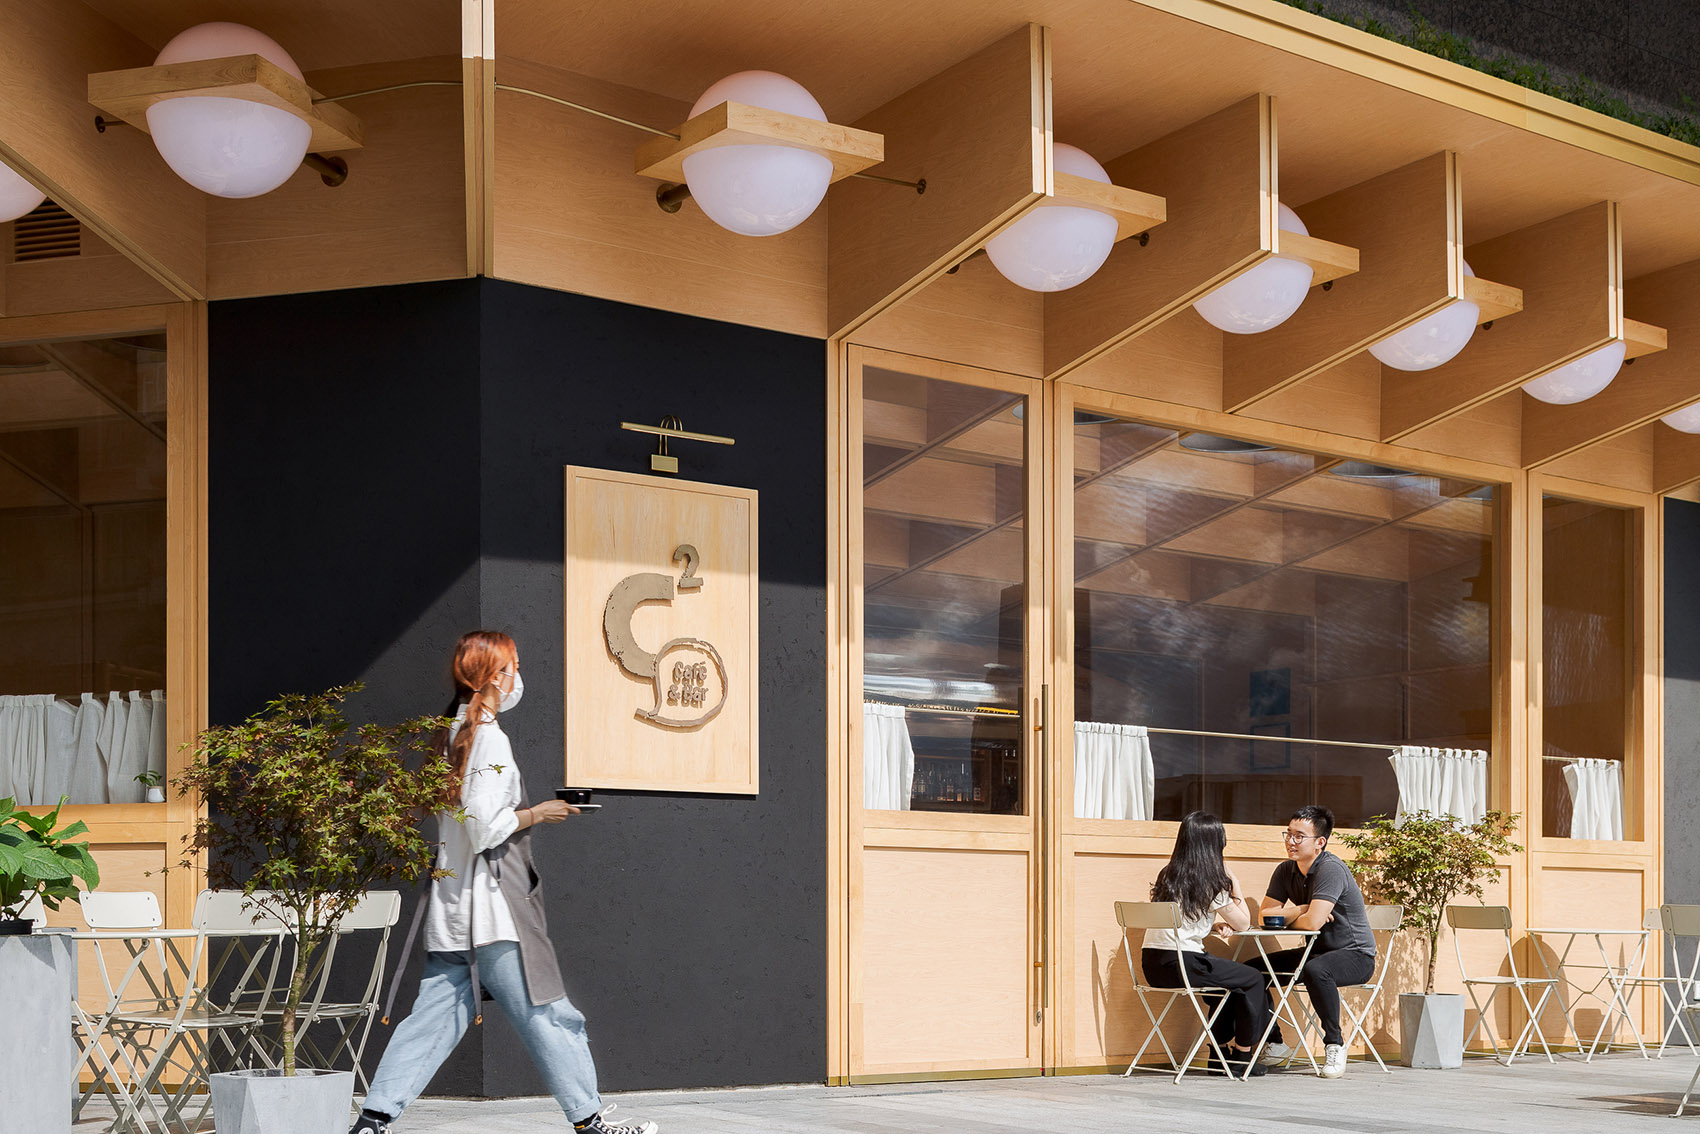 浮廊C2 Cafe &  Bar咖啡厅，深圳/专门为年轻人打造的“空中楼阁”-12